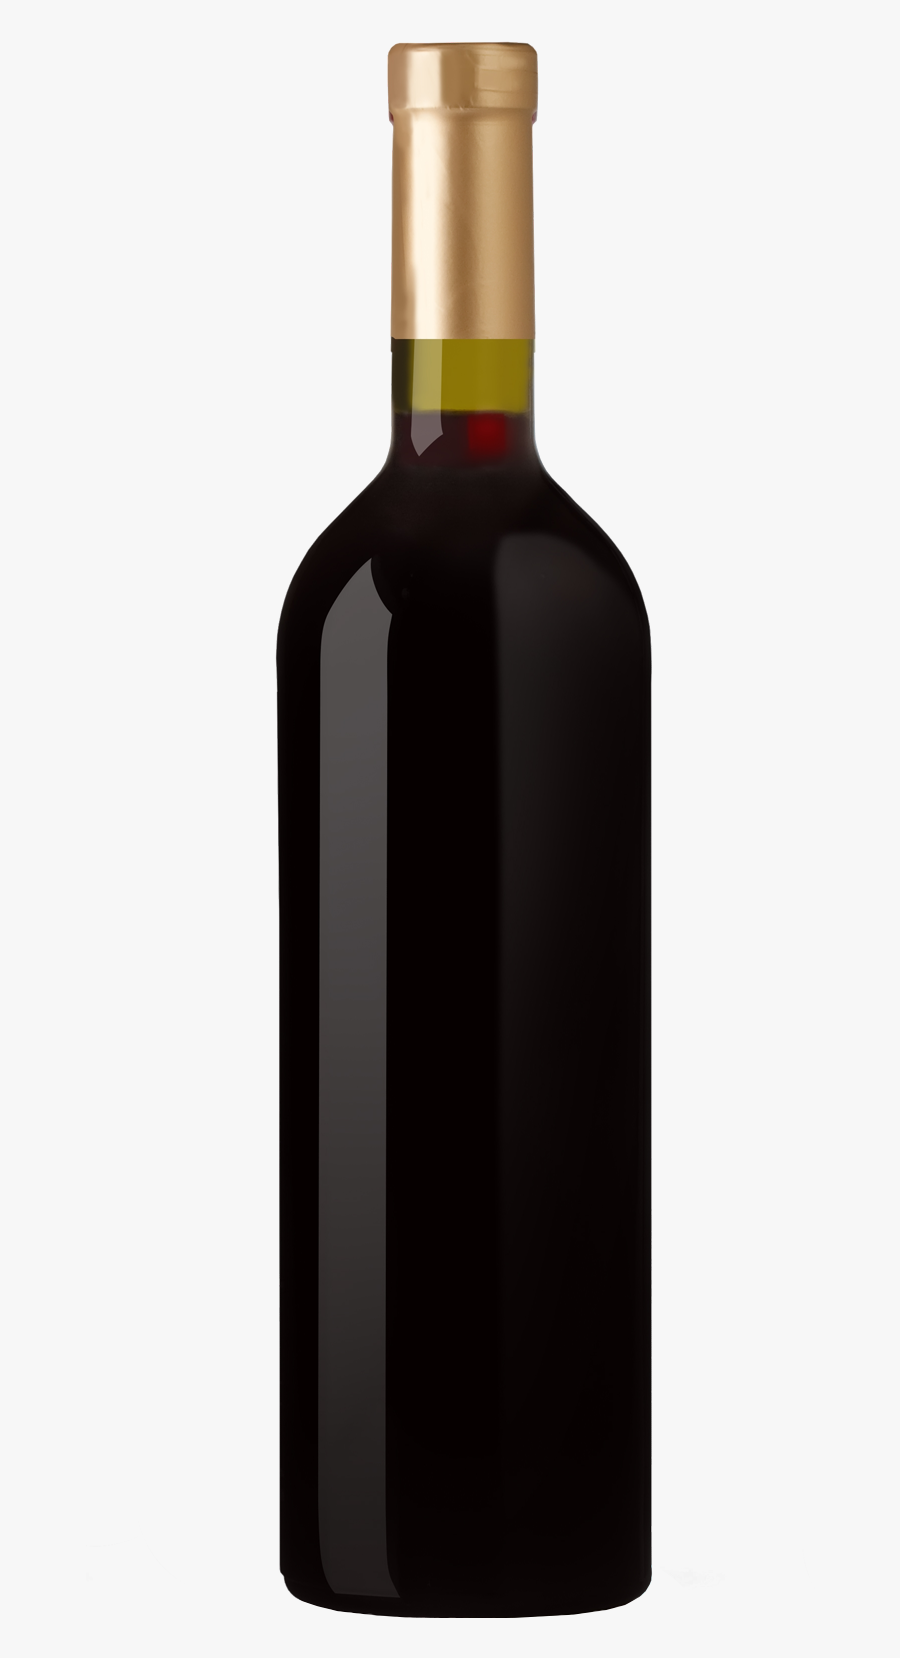 1577 X 1577 - Wine Bottle Labels, Transparent Clipart